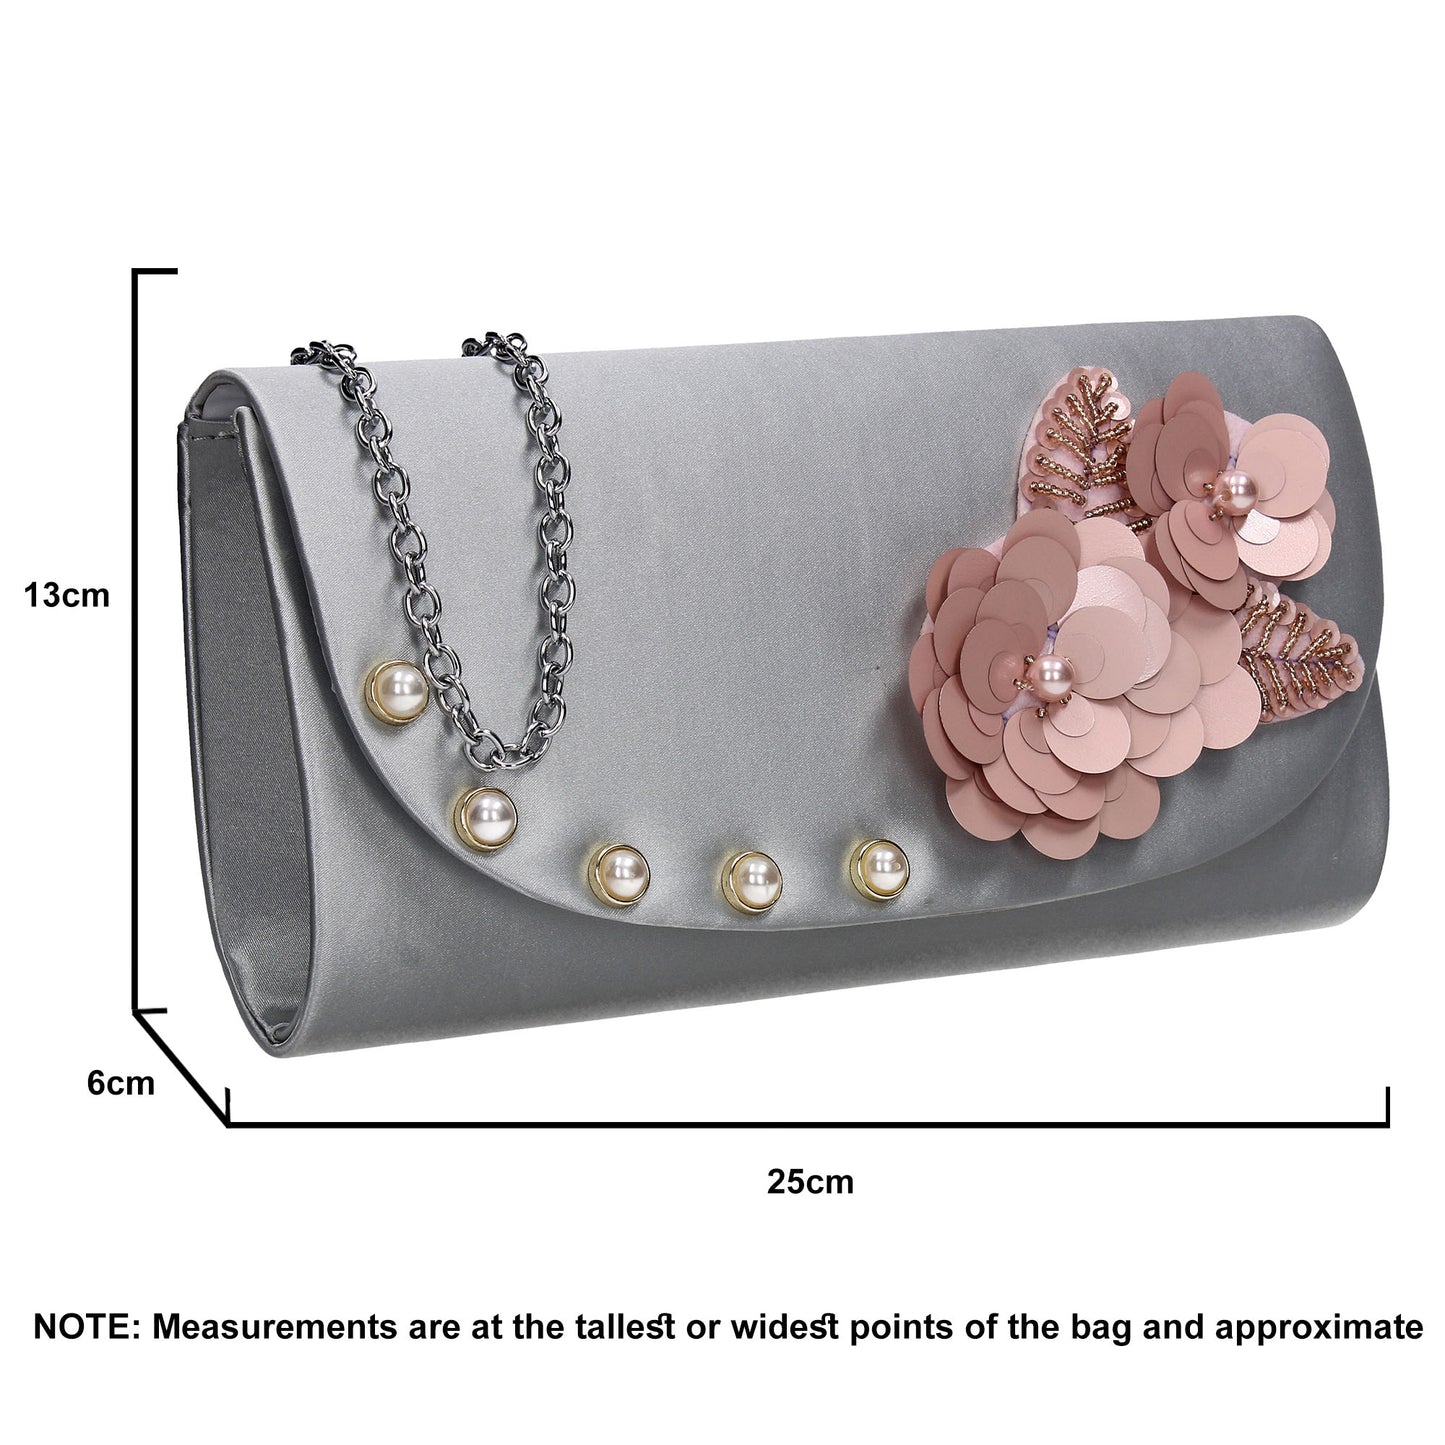 SWANKYSWANS Joyce Clutch Bag Silver Cute Cheap Clutch Bag For Weddings School and Work